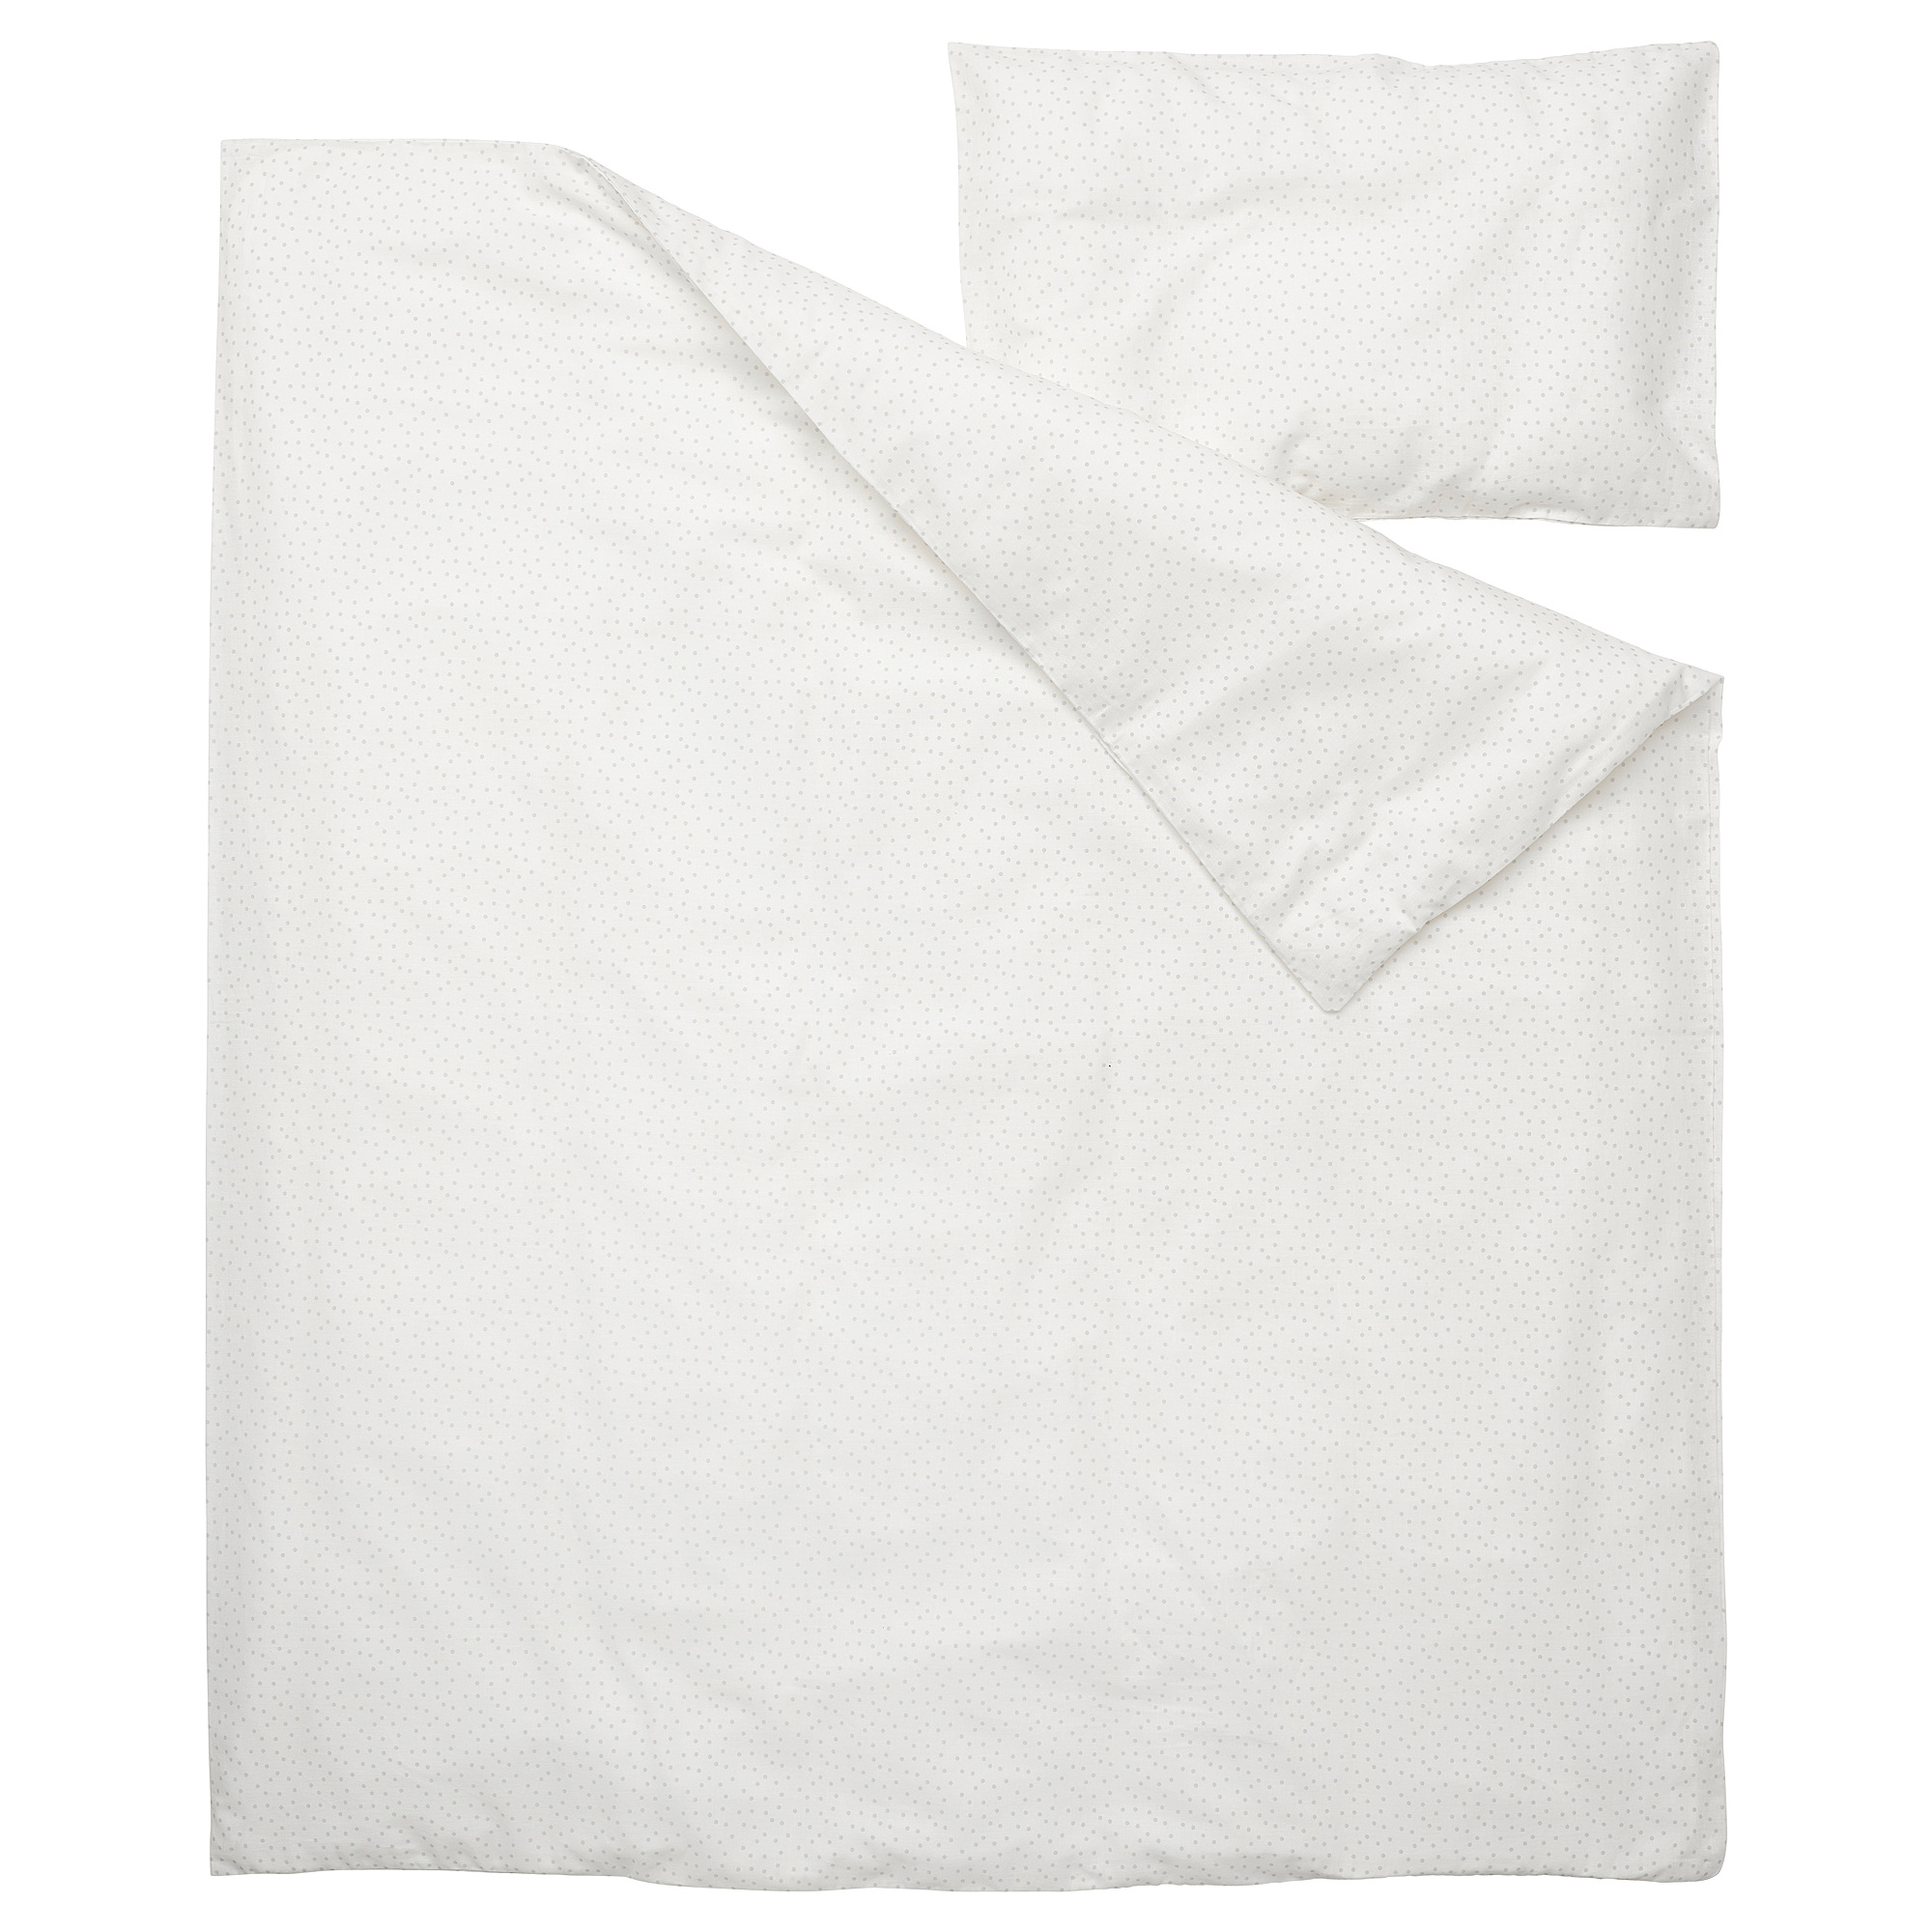 LEN duvet cover 1 pillowcase for cot